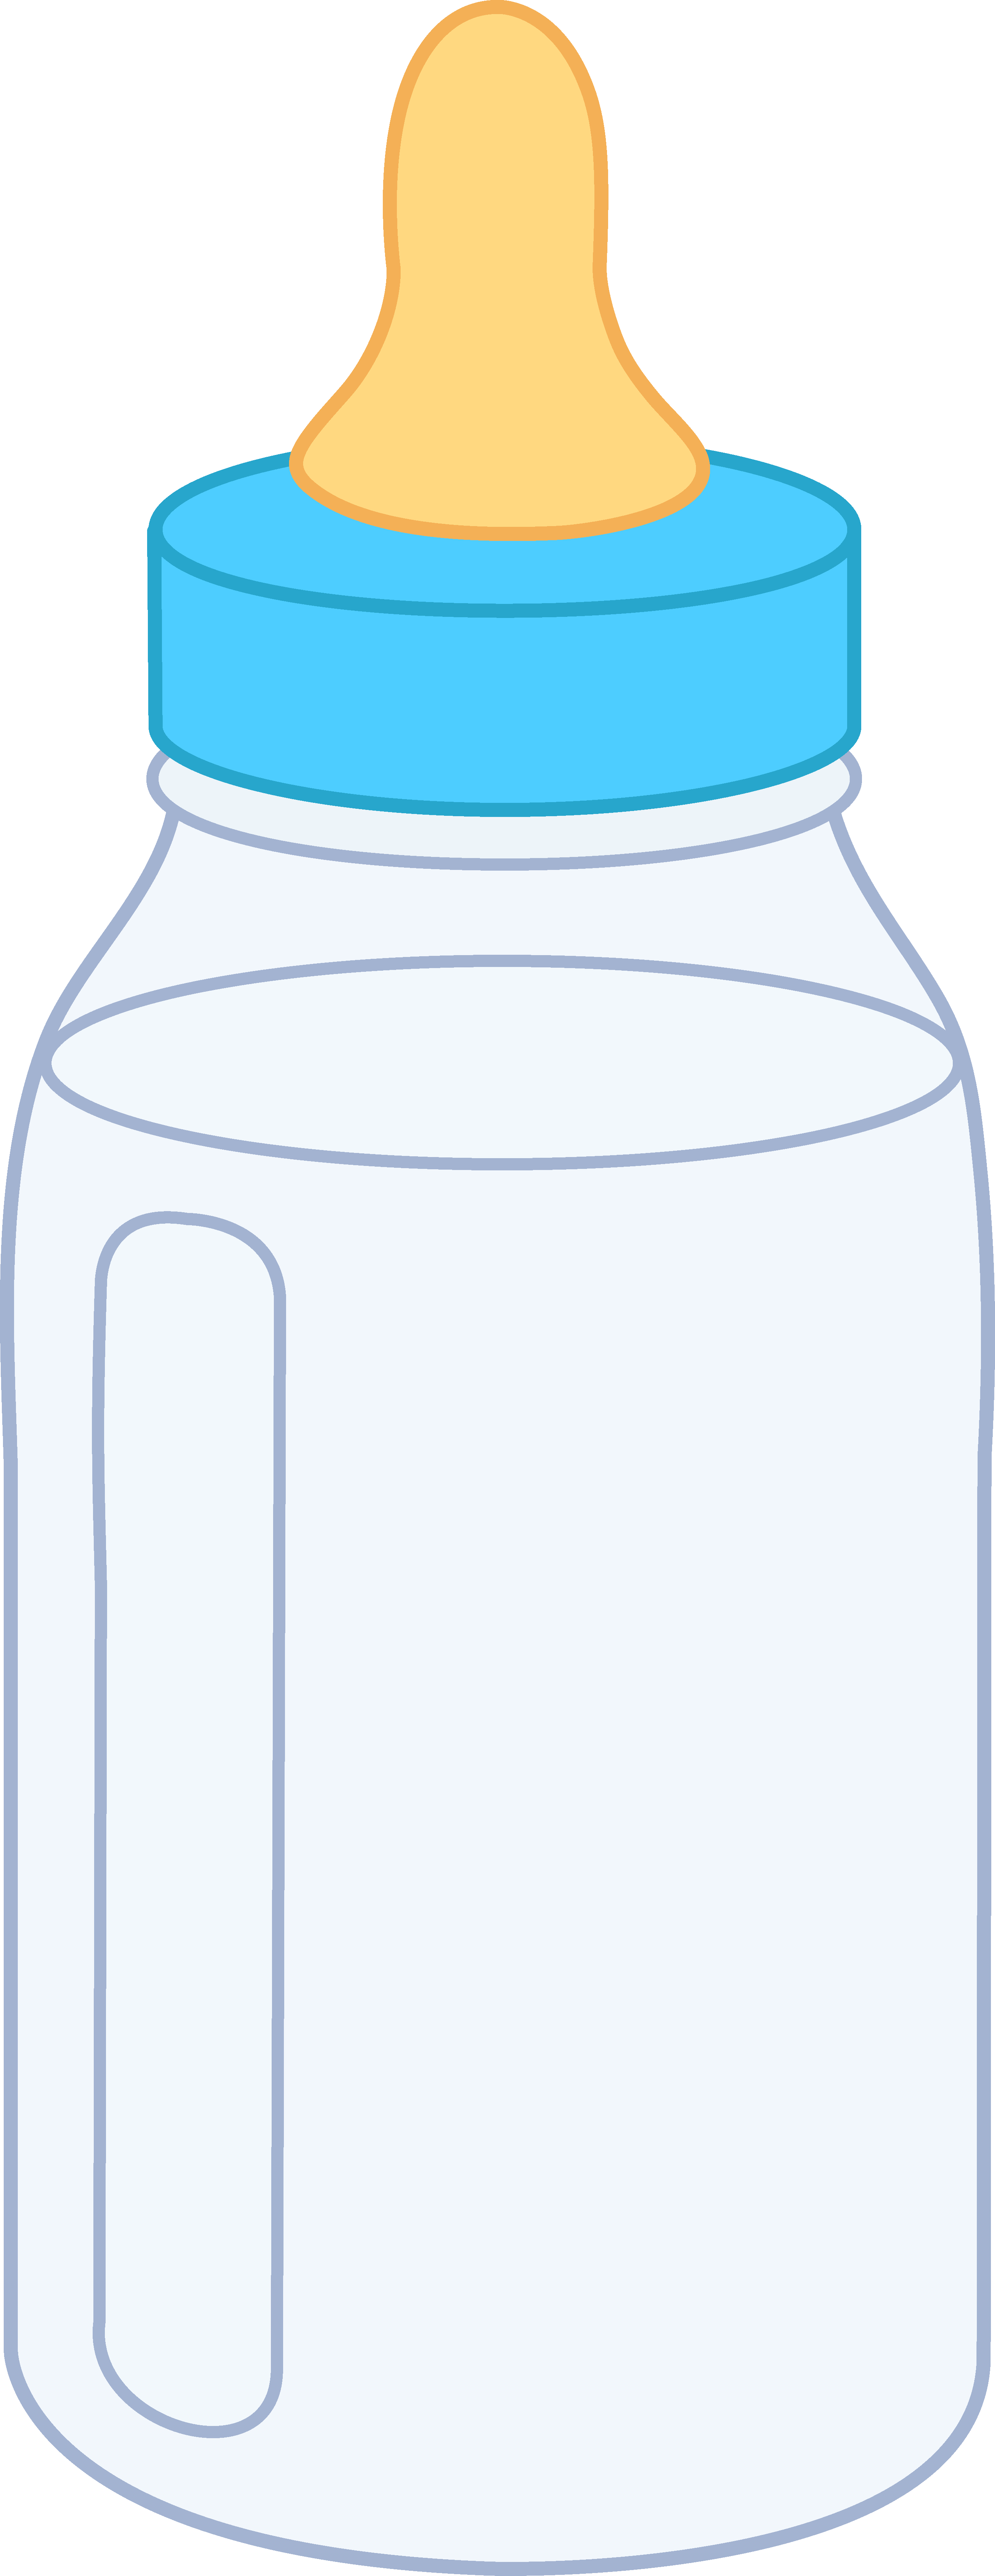 Milk Bottle Clip Art